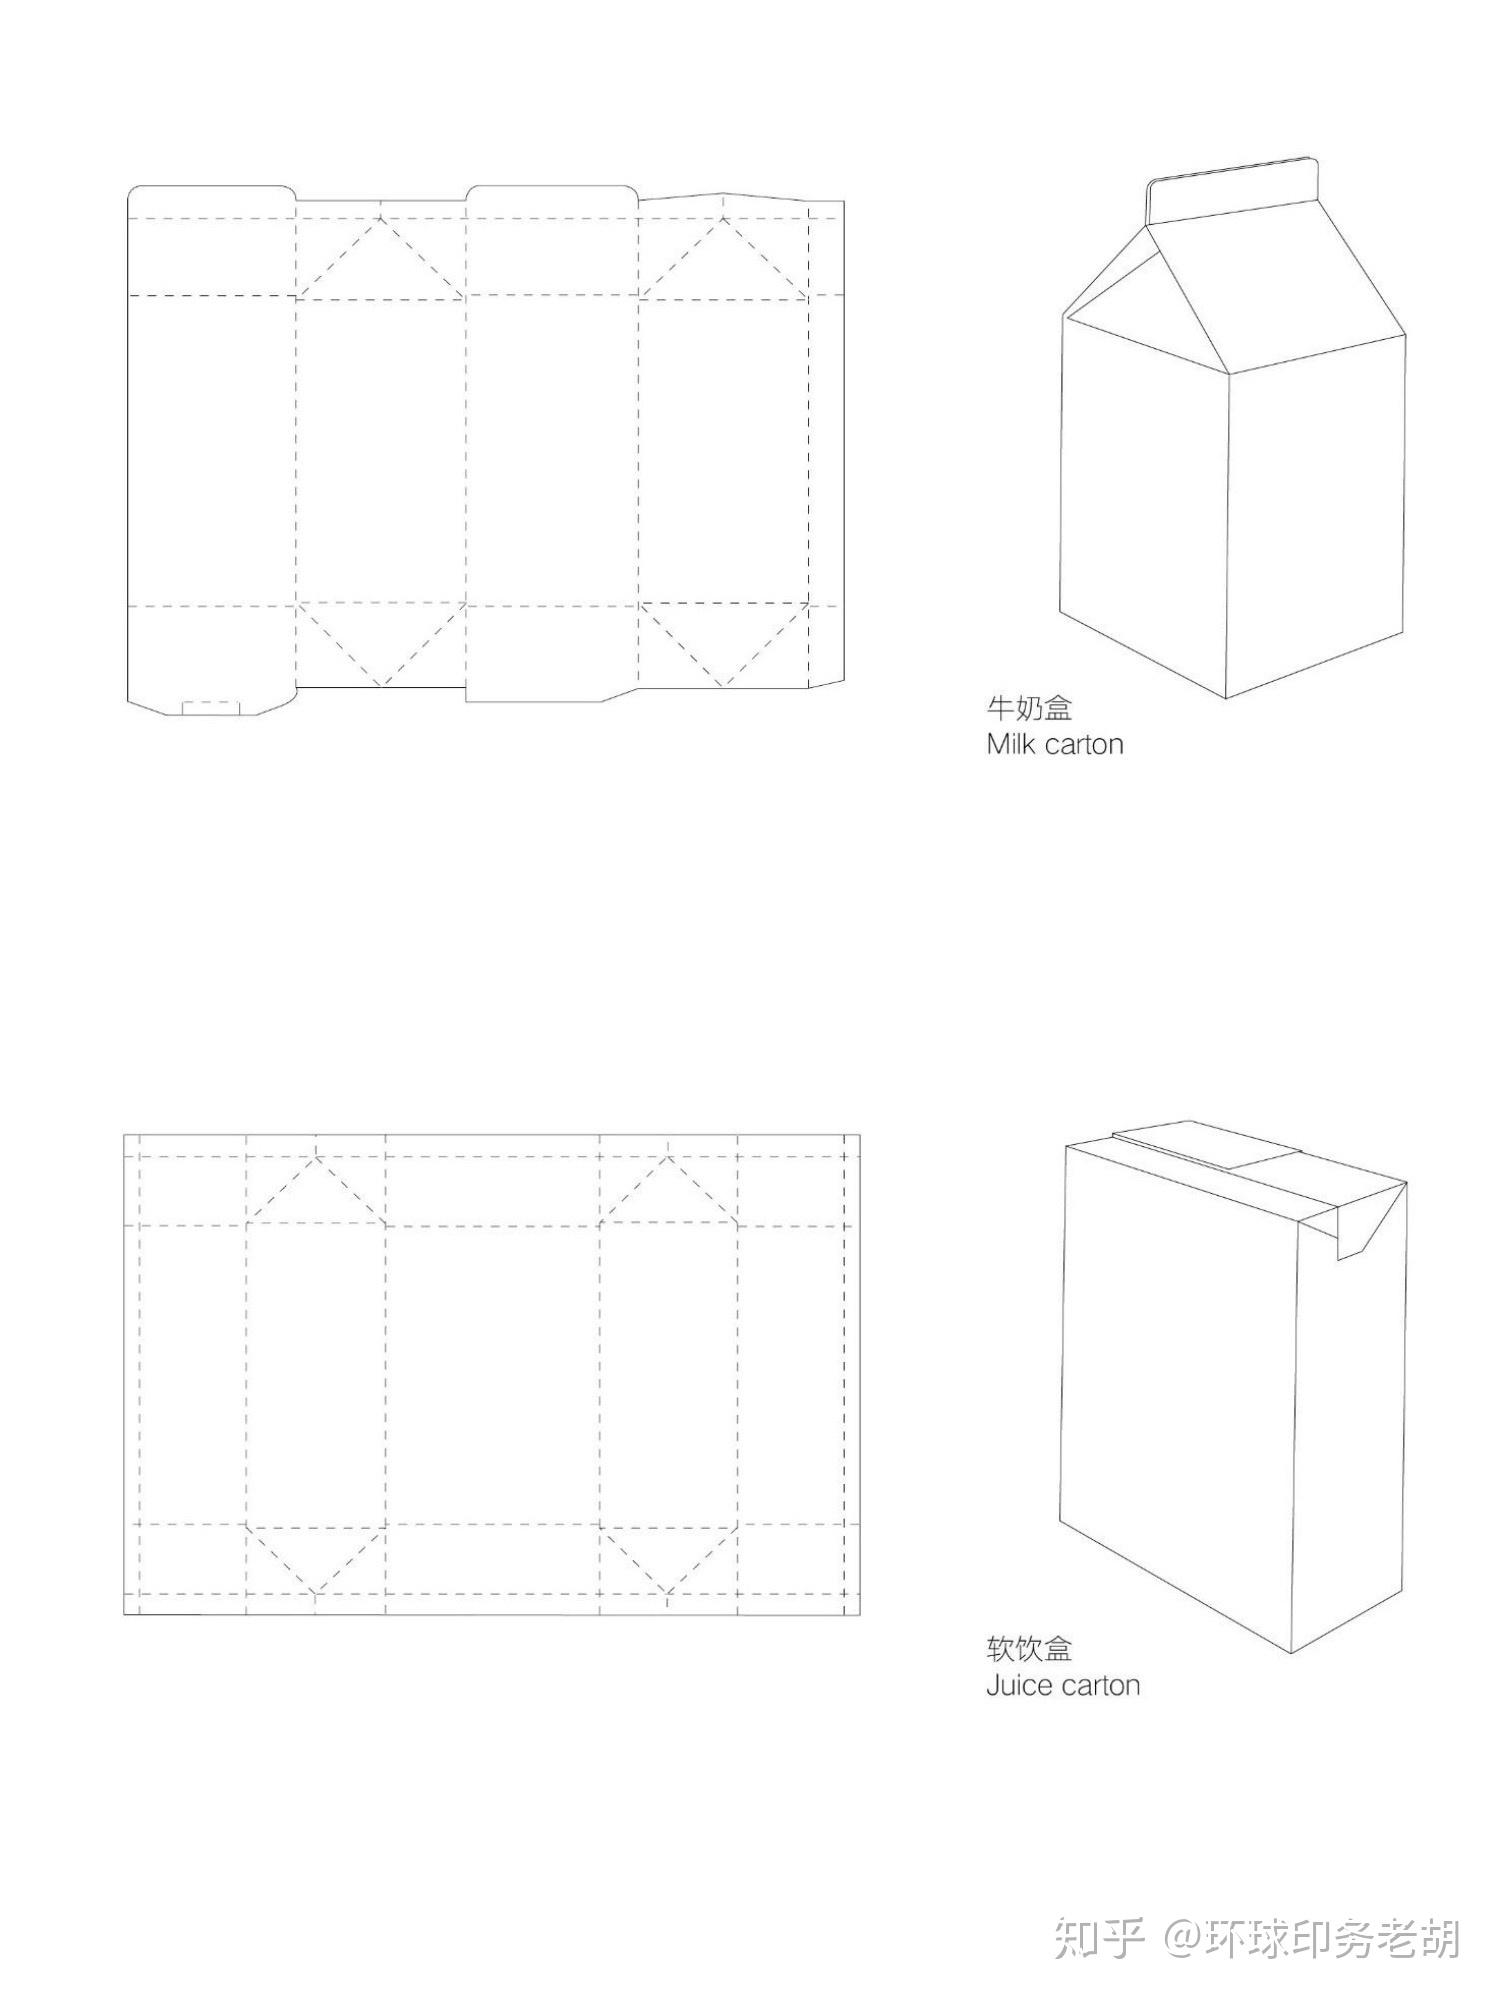 简单折纸大全图解 牛奶盒折纸步骤图解（恐龙骨架折纸教程） - 有点网 - 好手艺